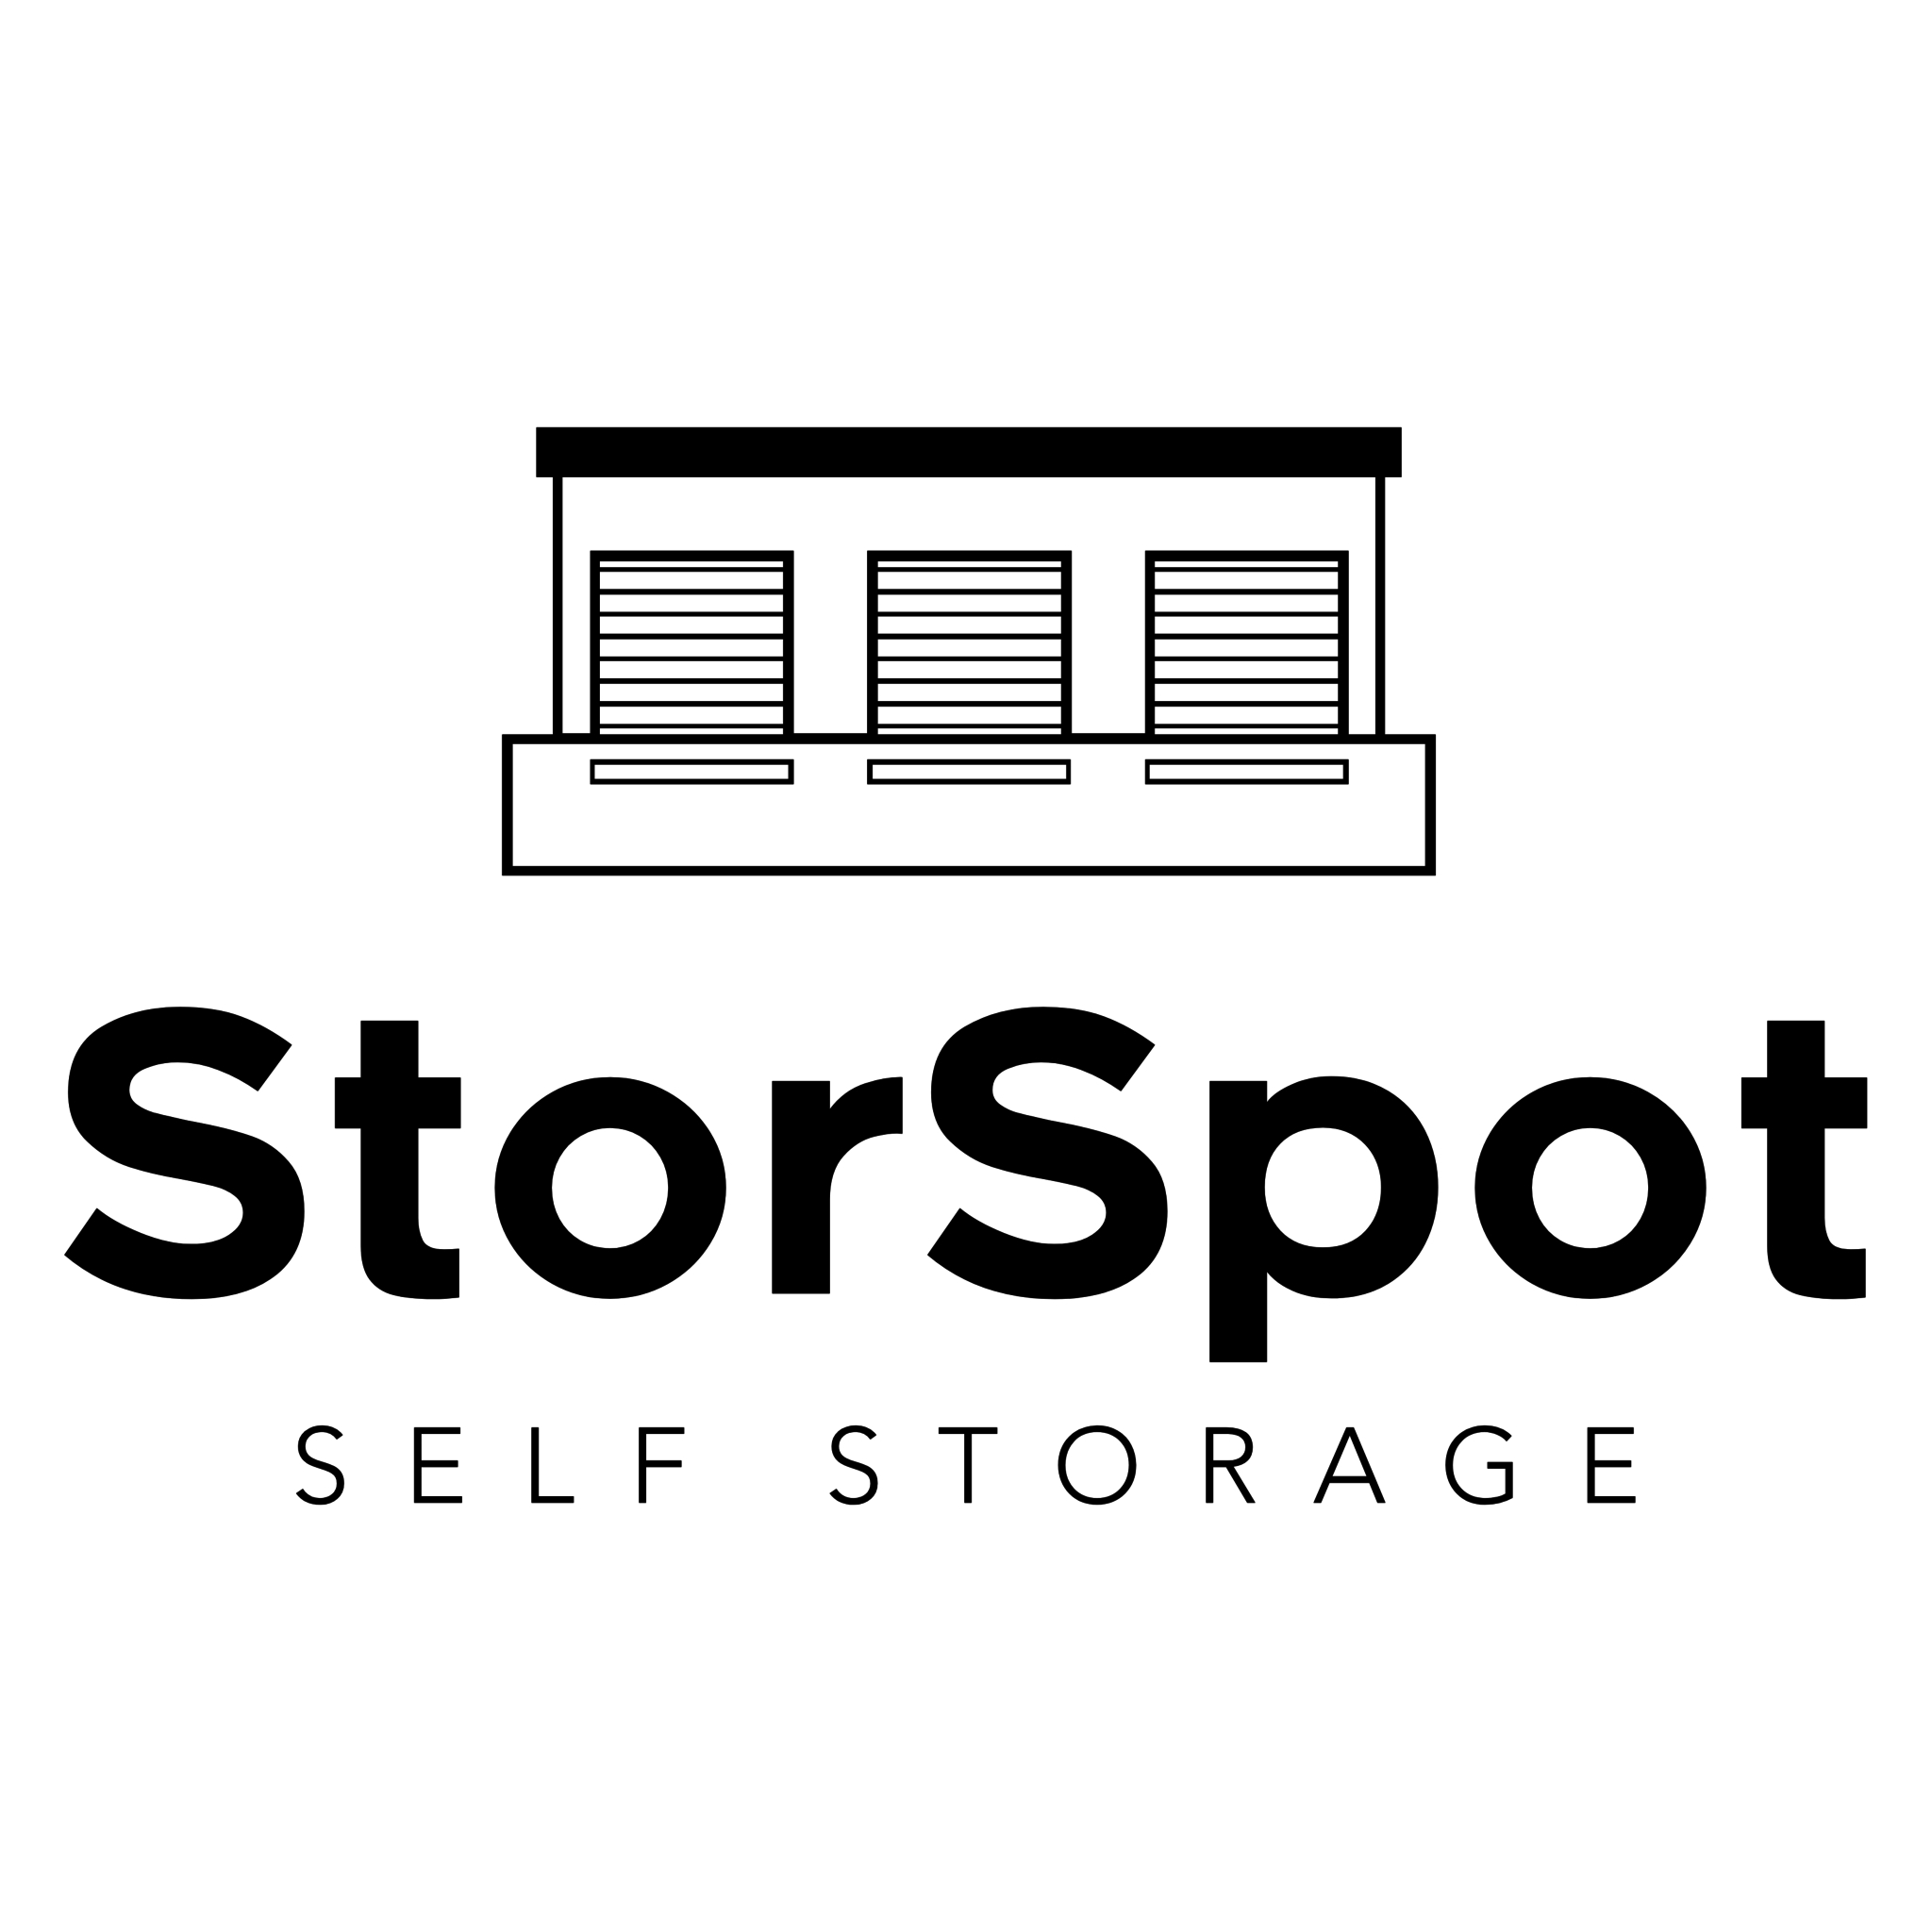 StorSpot Self Storage - Self-Storage